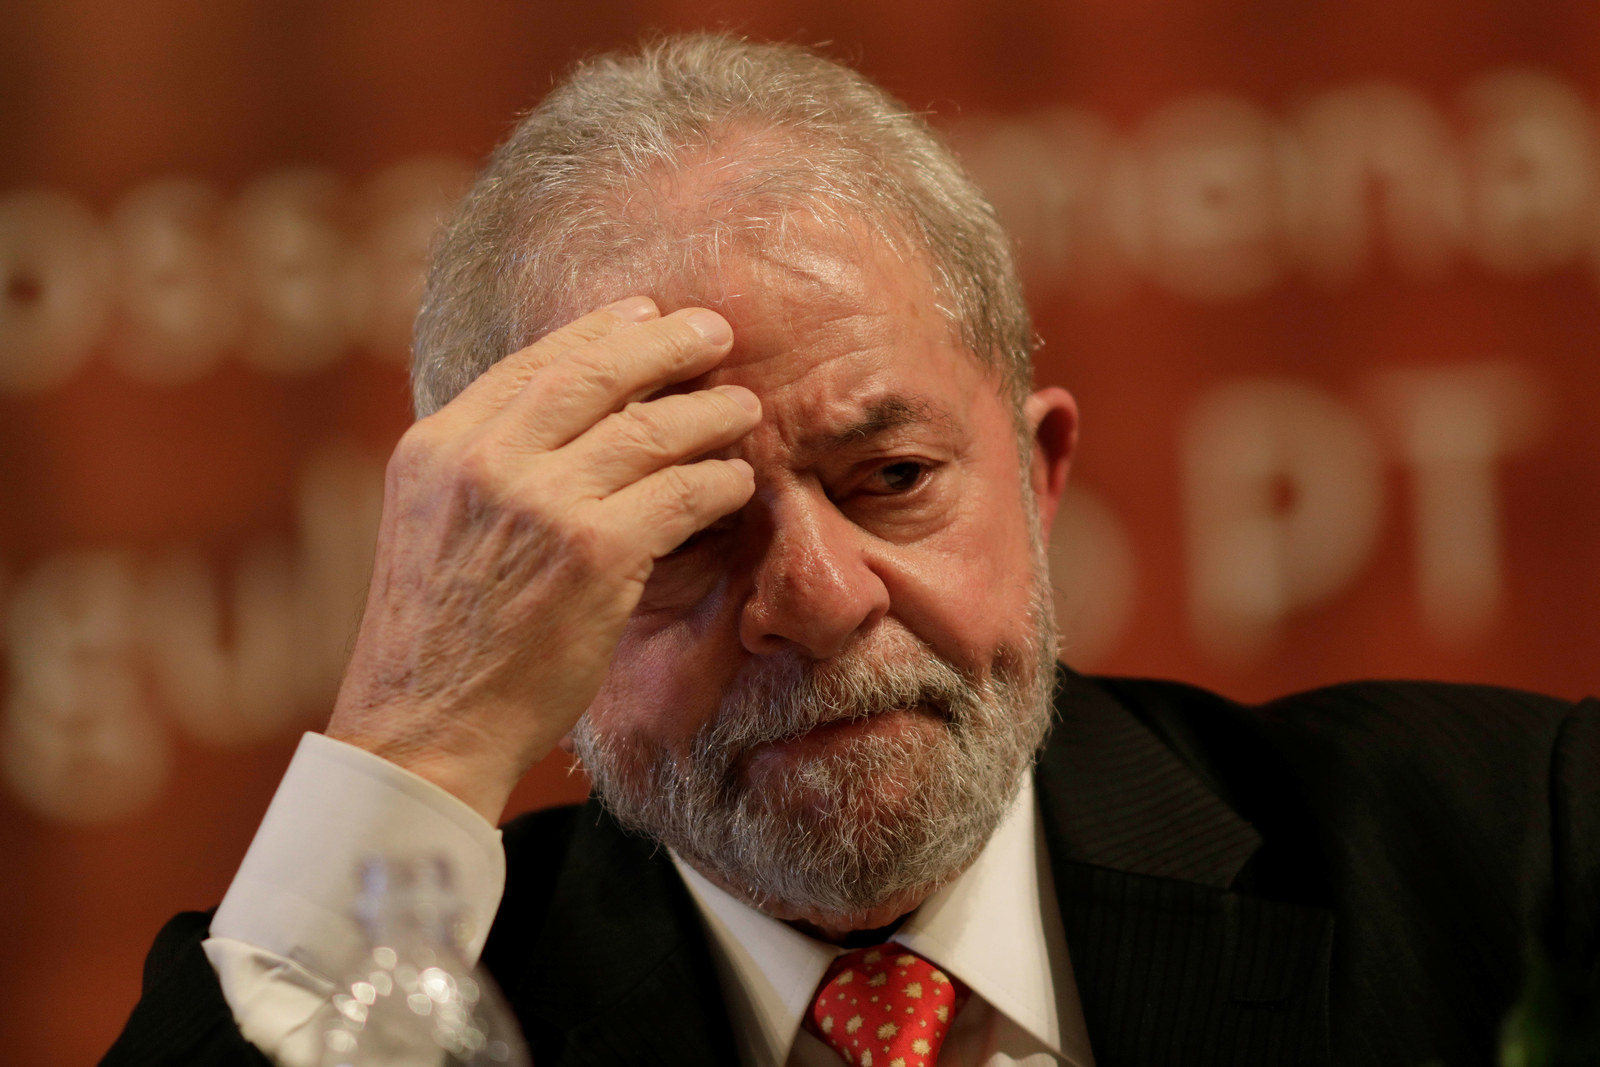 Piso Salarial da Enfermagem é Esquecido Pelo Governo Lula